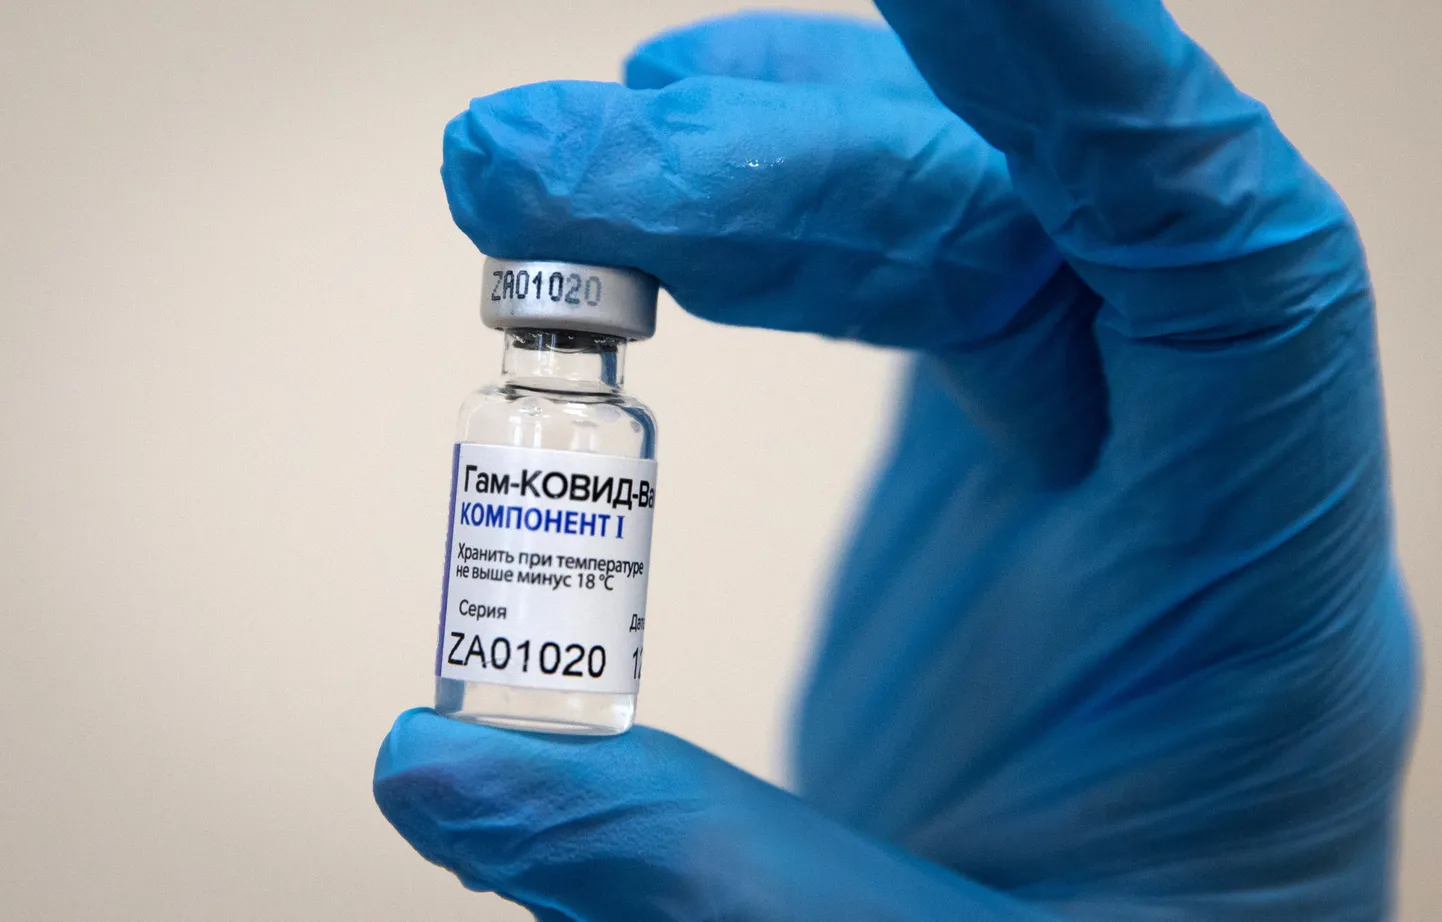 Евросоюз принял заявку на регистрацию российской вакцины от коронавируса «Спутник V».